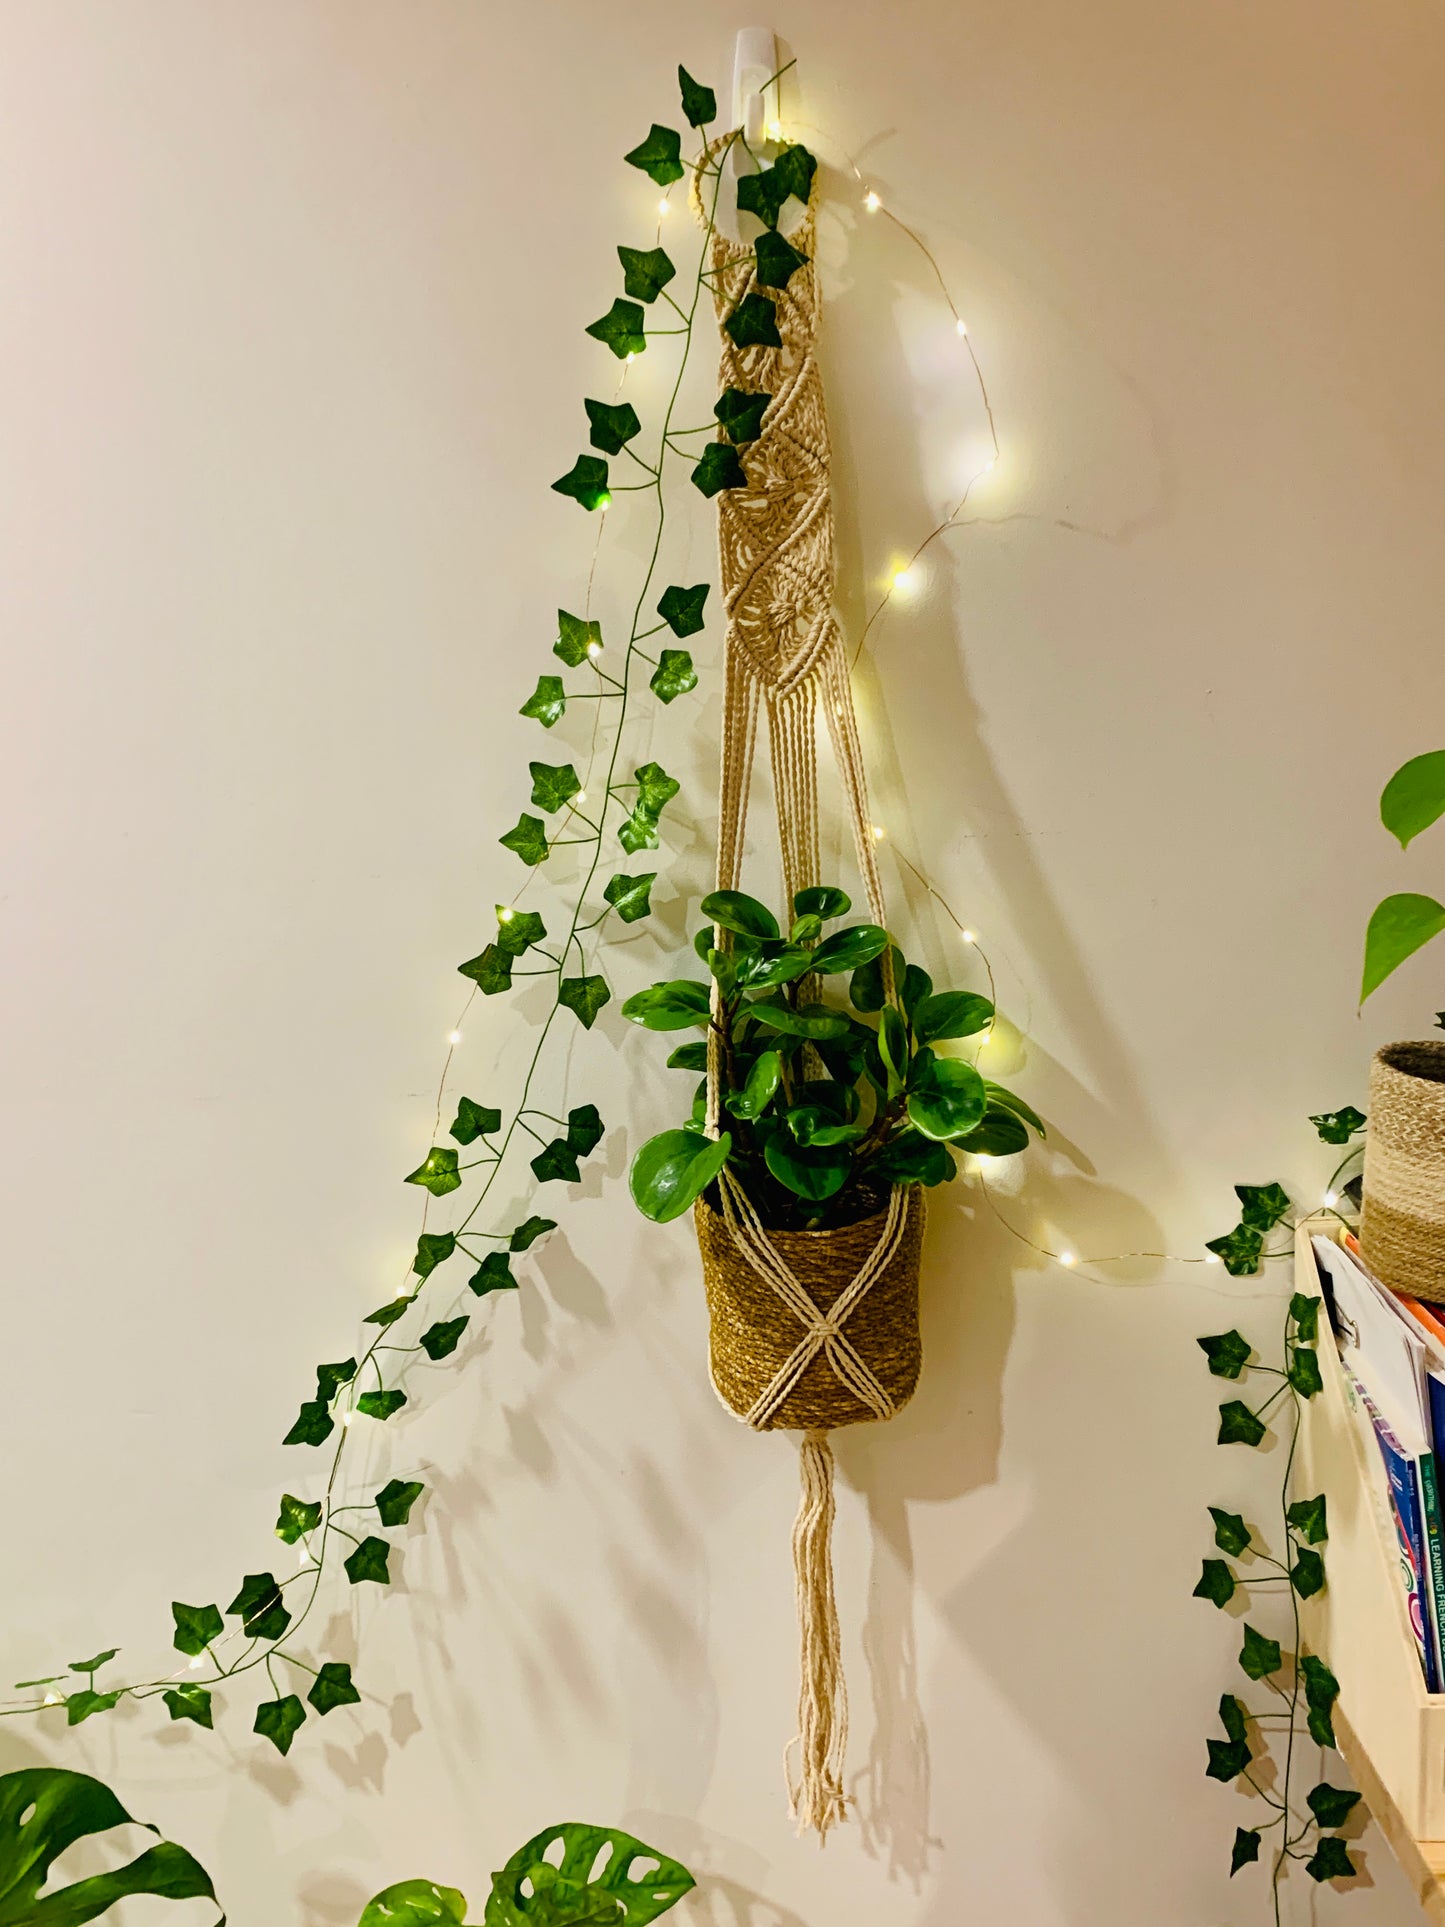 Habitat Aesthetic Starter Pack Indoor Plant Pot Hanging Macramé Lights Artificial Vines